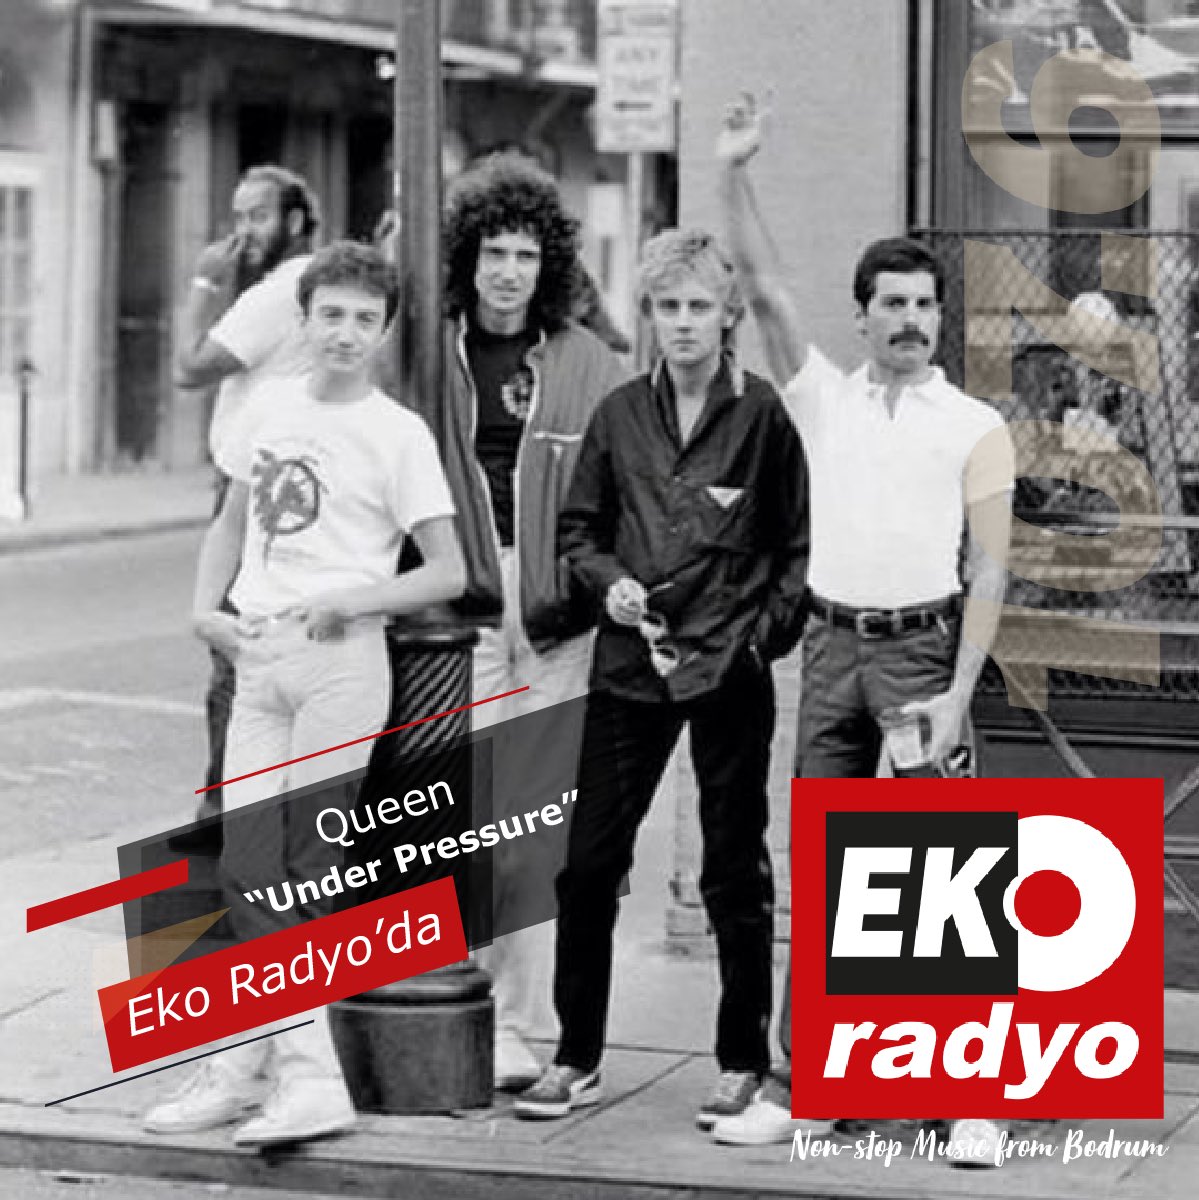 Queen “Under Pressure”, Eko Radyo'da! 🎶 Dinlemek için tıklayın 👉🏻 ekoradyo.com.tr #ekoradyo #nostalji #retro #radio #radyo #queen #underpressure